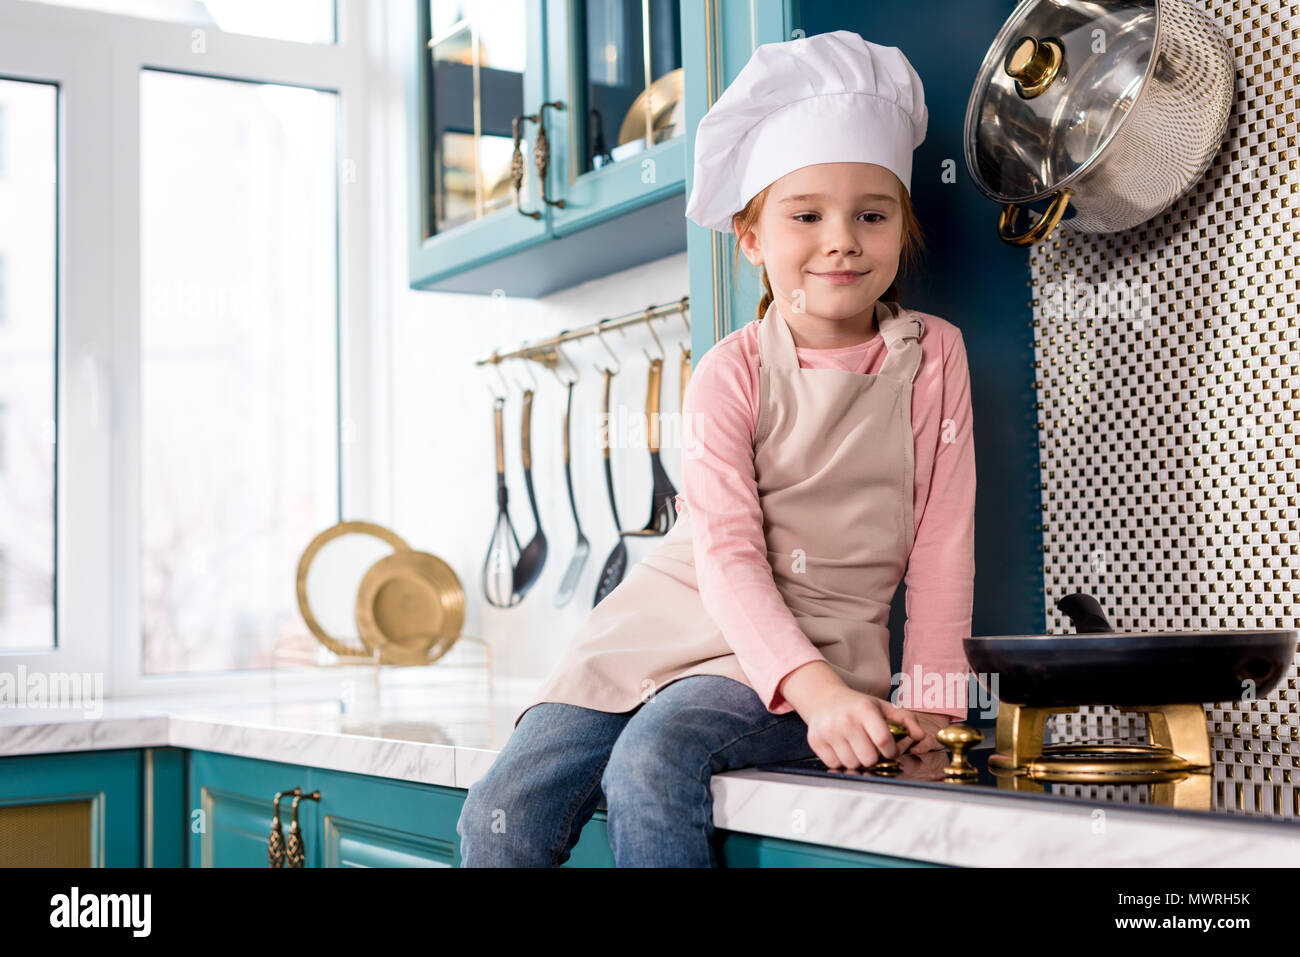 Carino bambino sorridente in chef hat e grembiule guardando padella sulla stufa Foto Stock